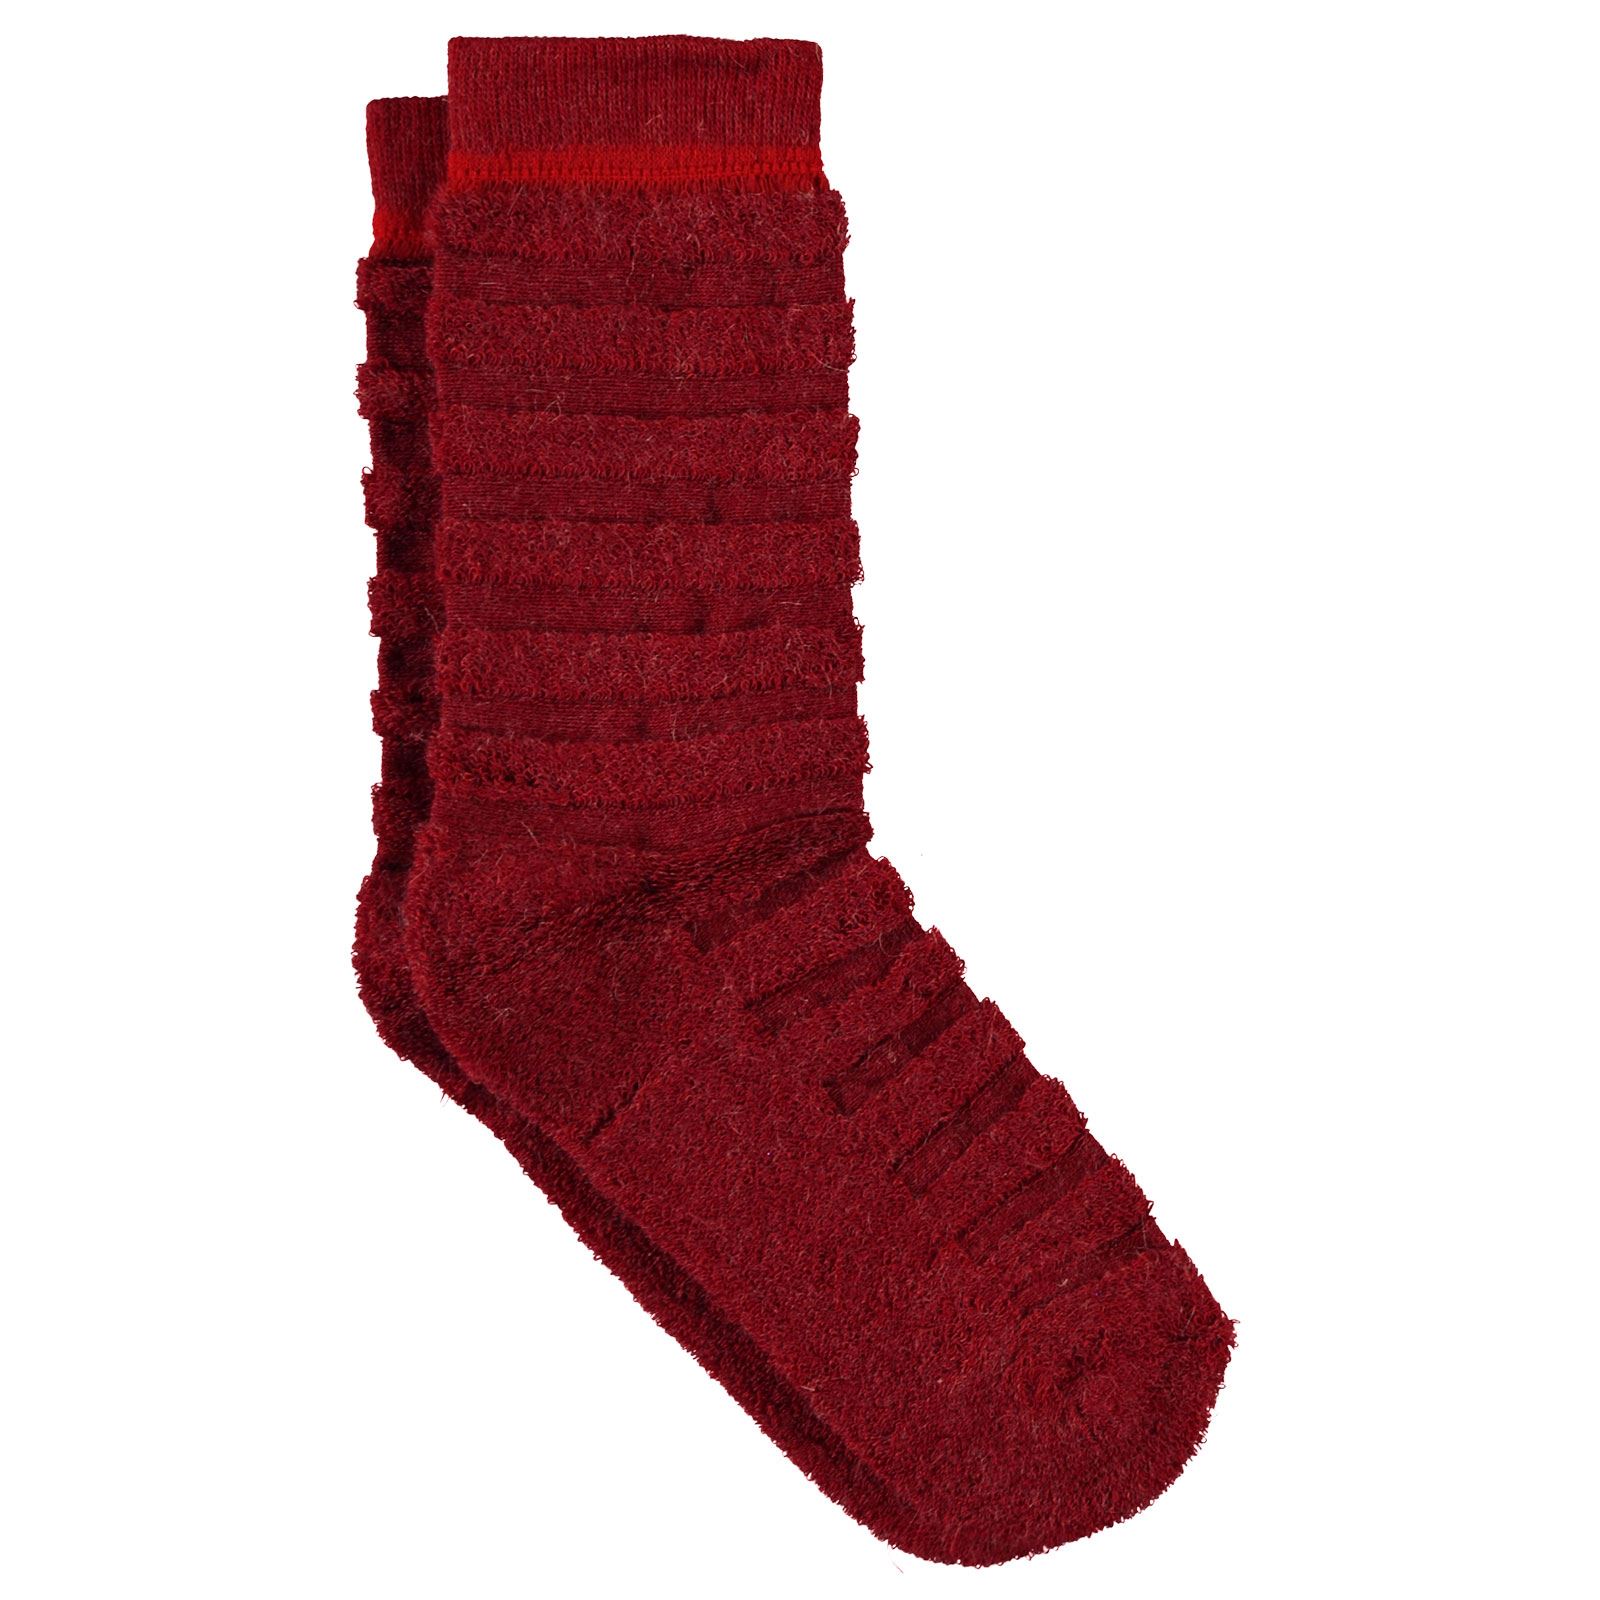 Bella Calze Kız Çocuk Ters Havlu Soket Çorap 36-40 Numara Kiremit